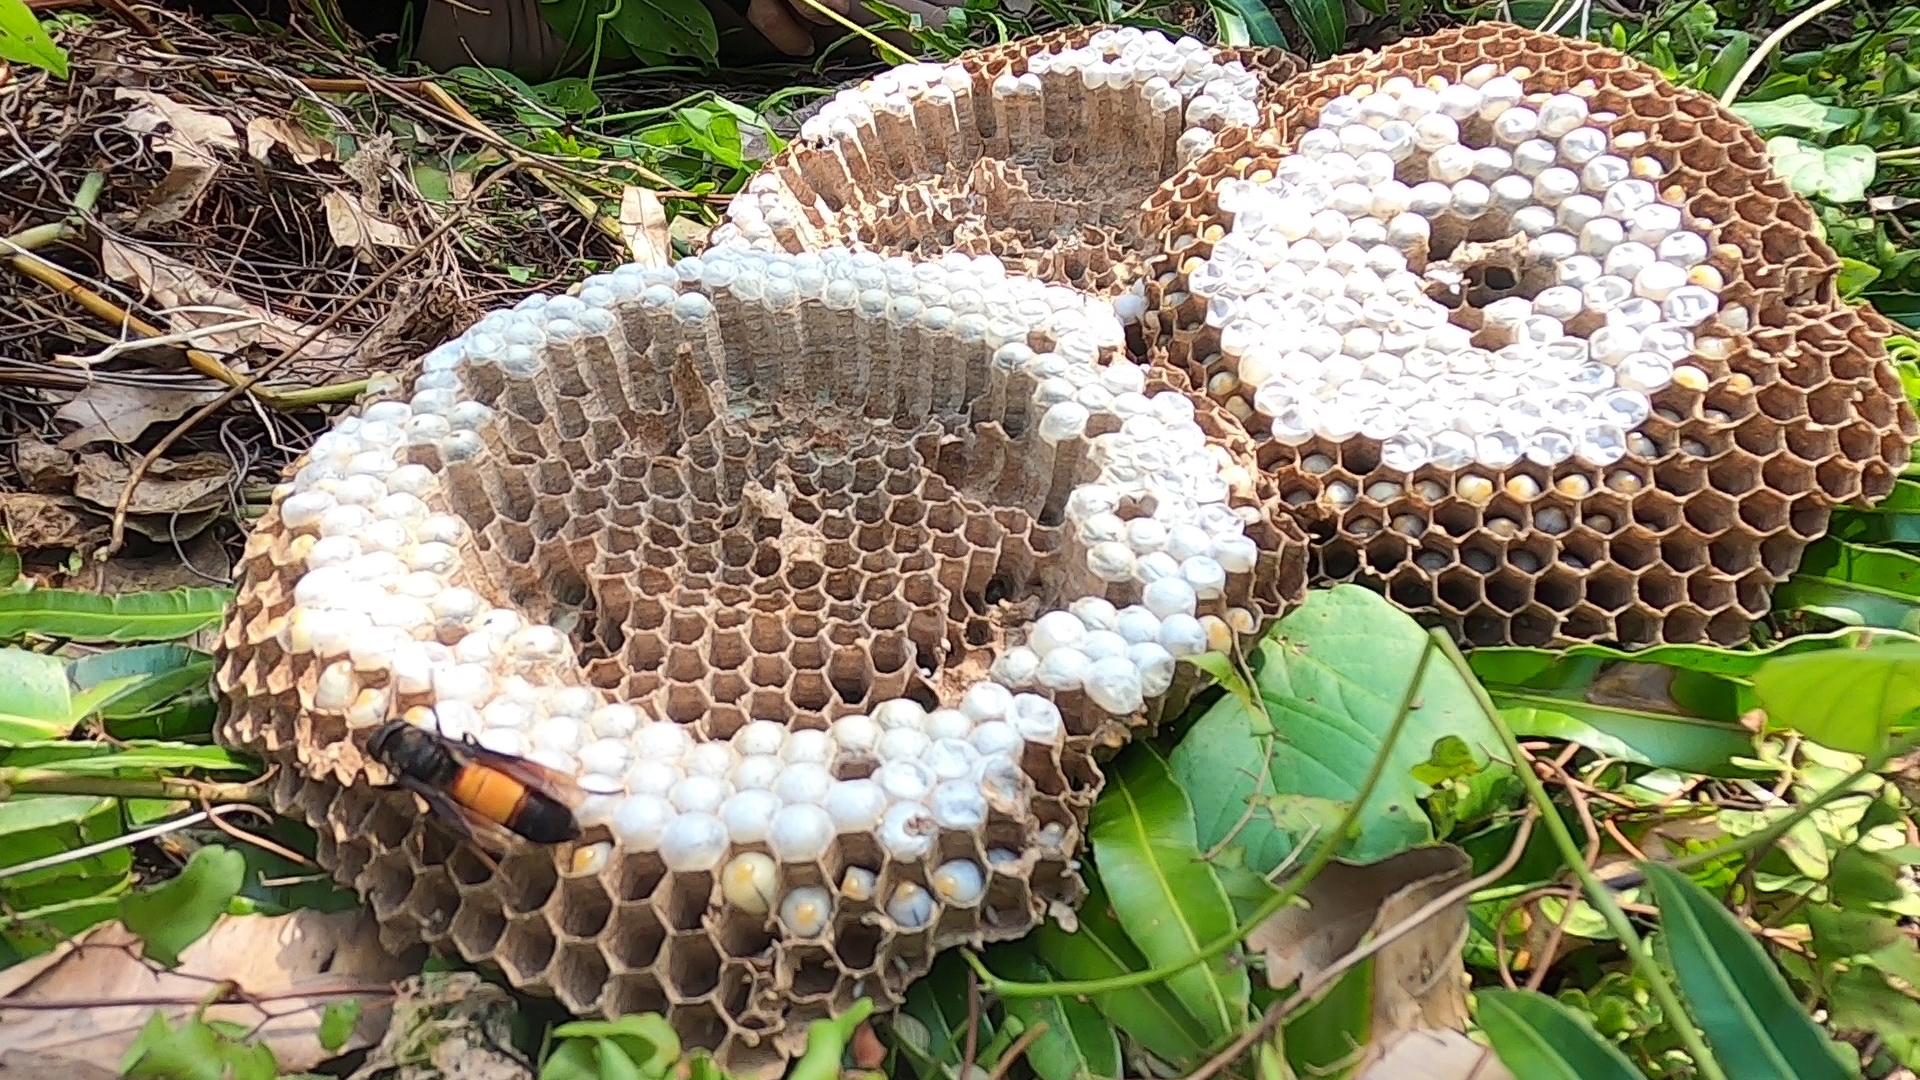 Ở khu rừng tràm nổi tiếng Cà Mau, cô gái một mình săn loài ong gì mà nguy hiểm như rắn độc?- Ảnh 5.